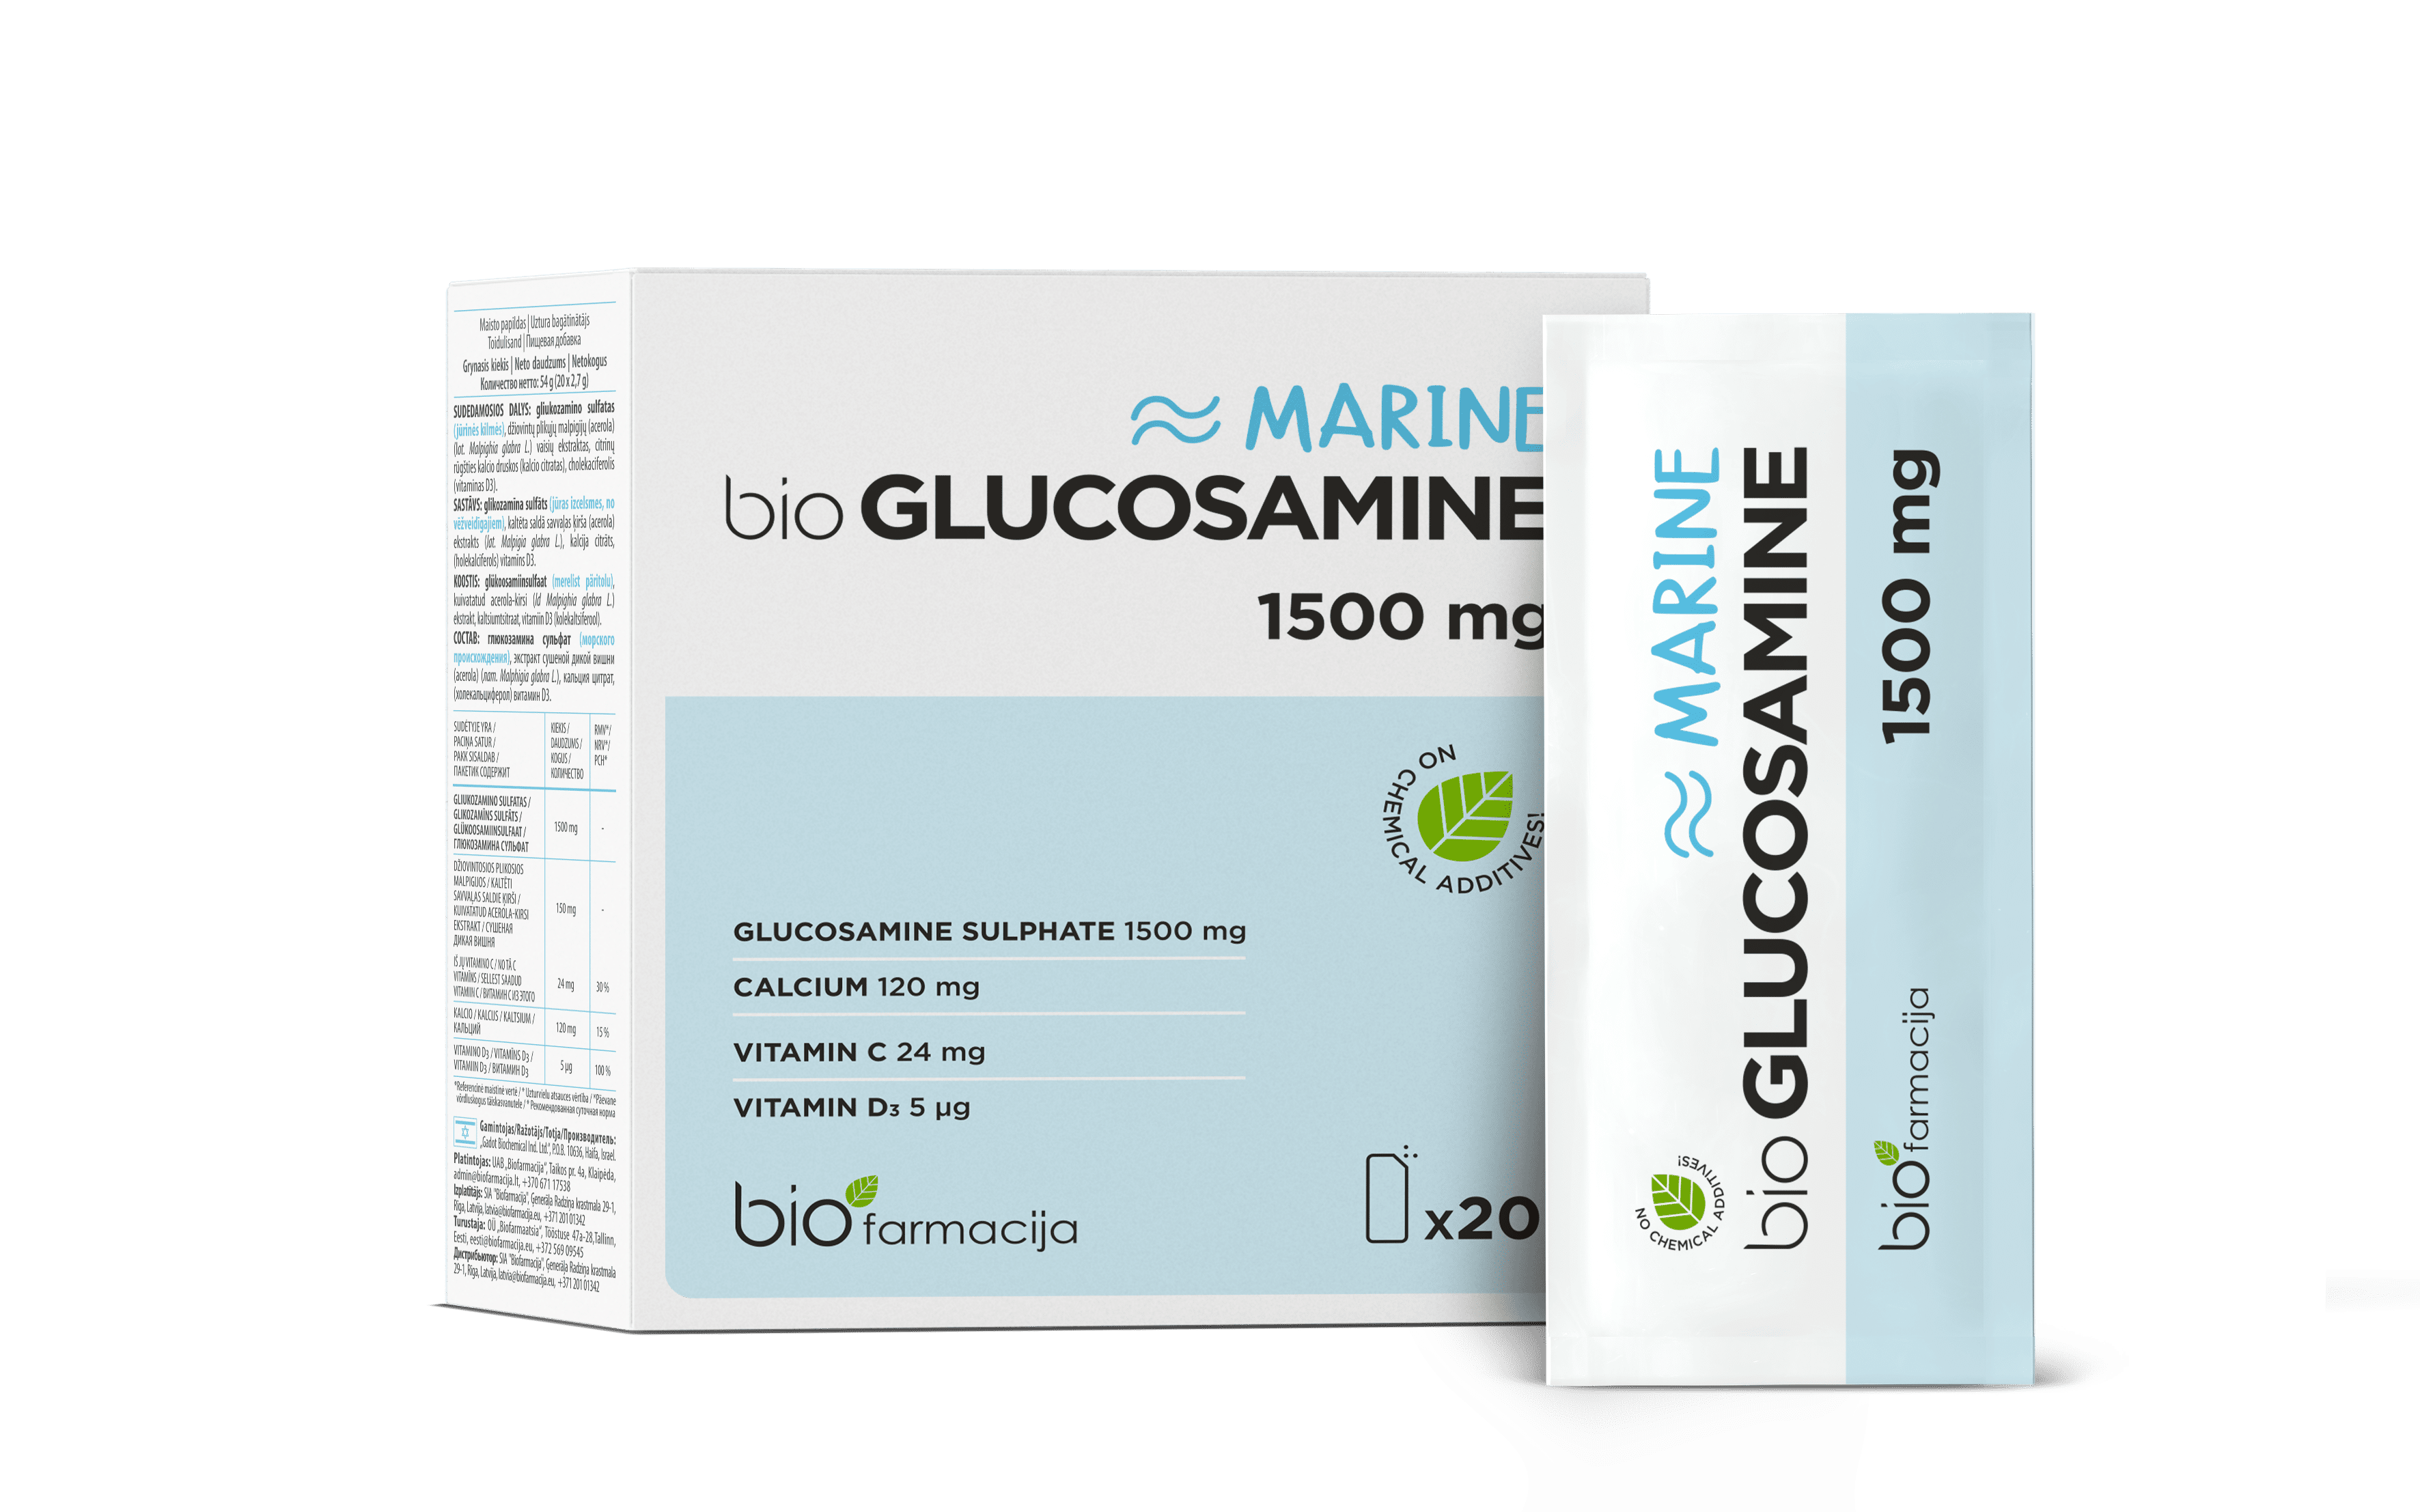 lucosamine, Biofarmacija, Kõrge kogus glükoosamiini liigeste tervise toetuseks!